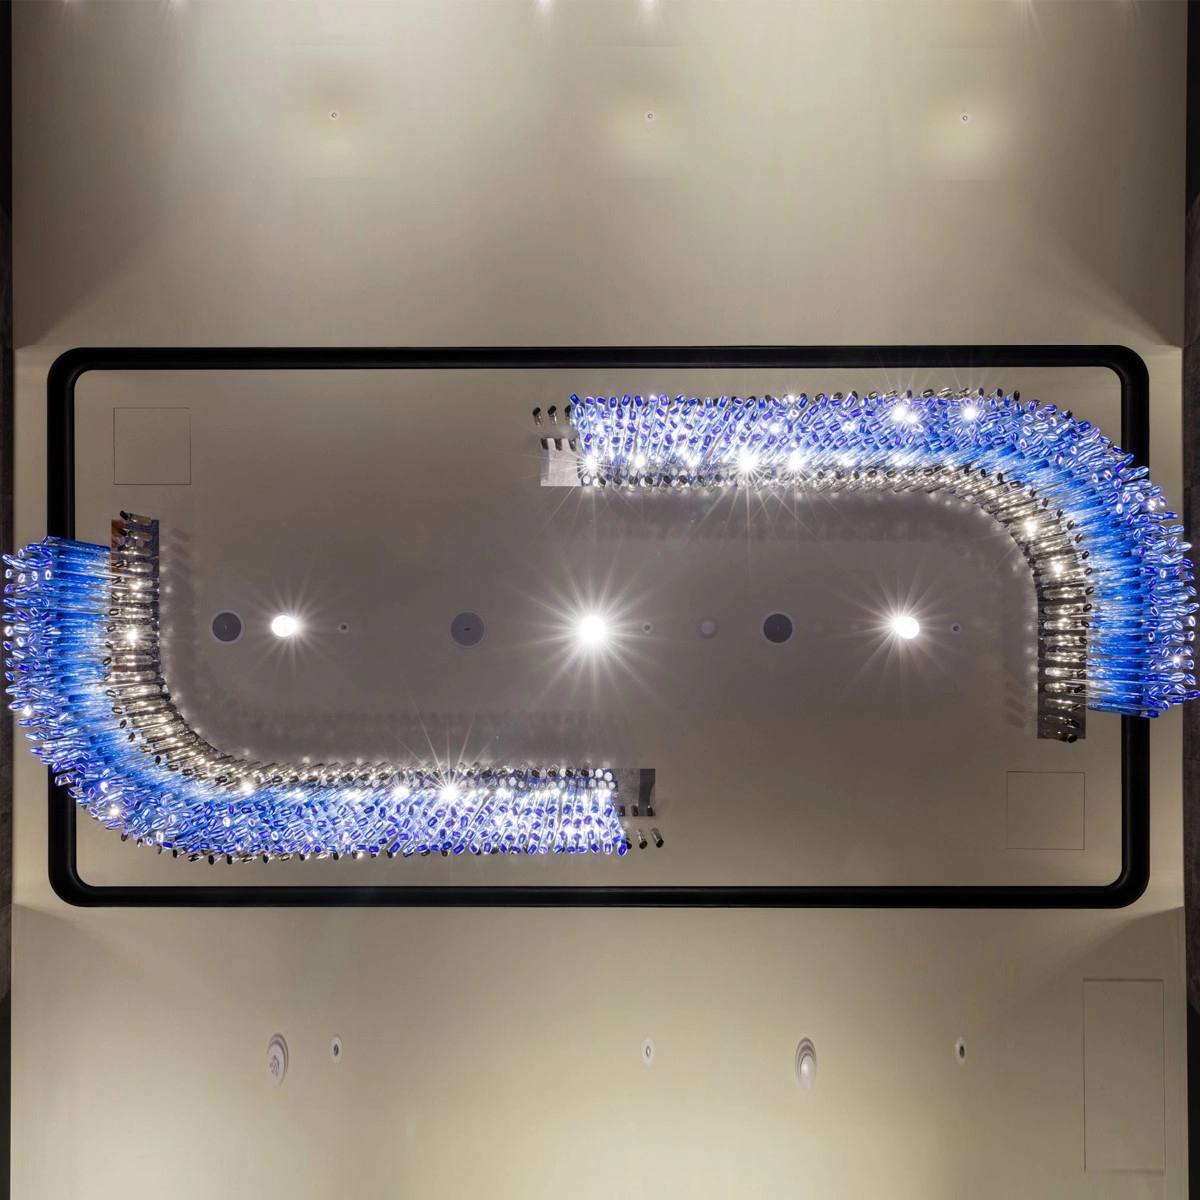 Curve symmetrical blue glass flush mount chandelier